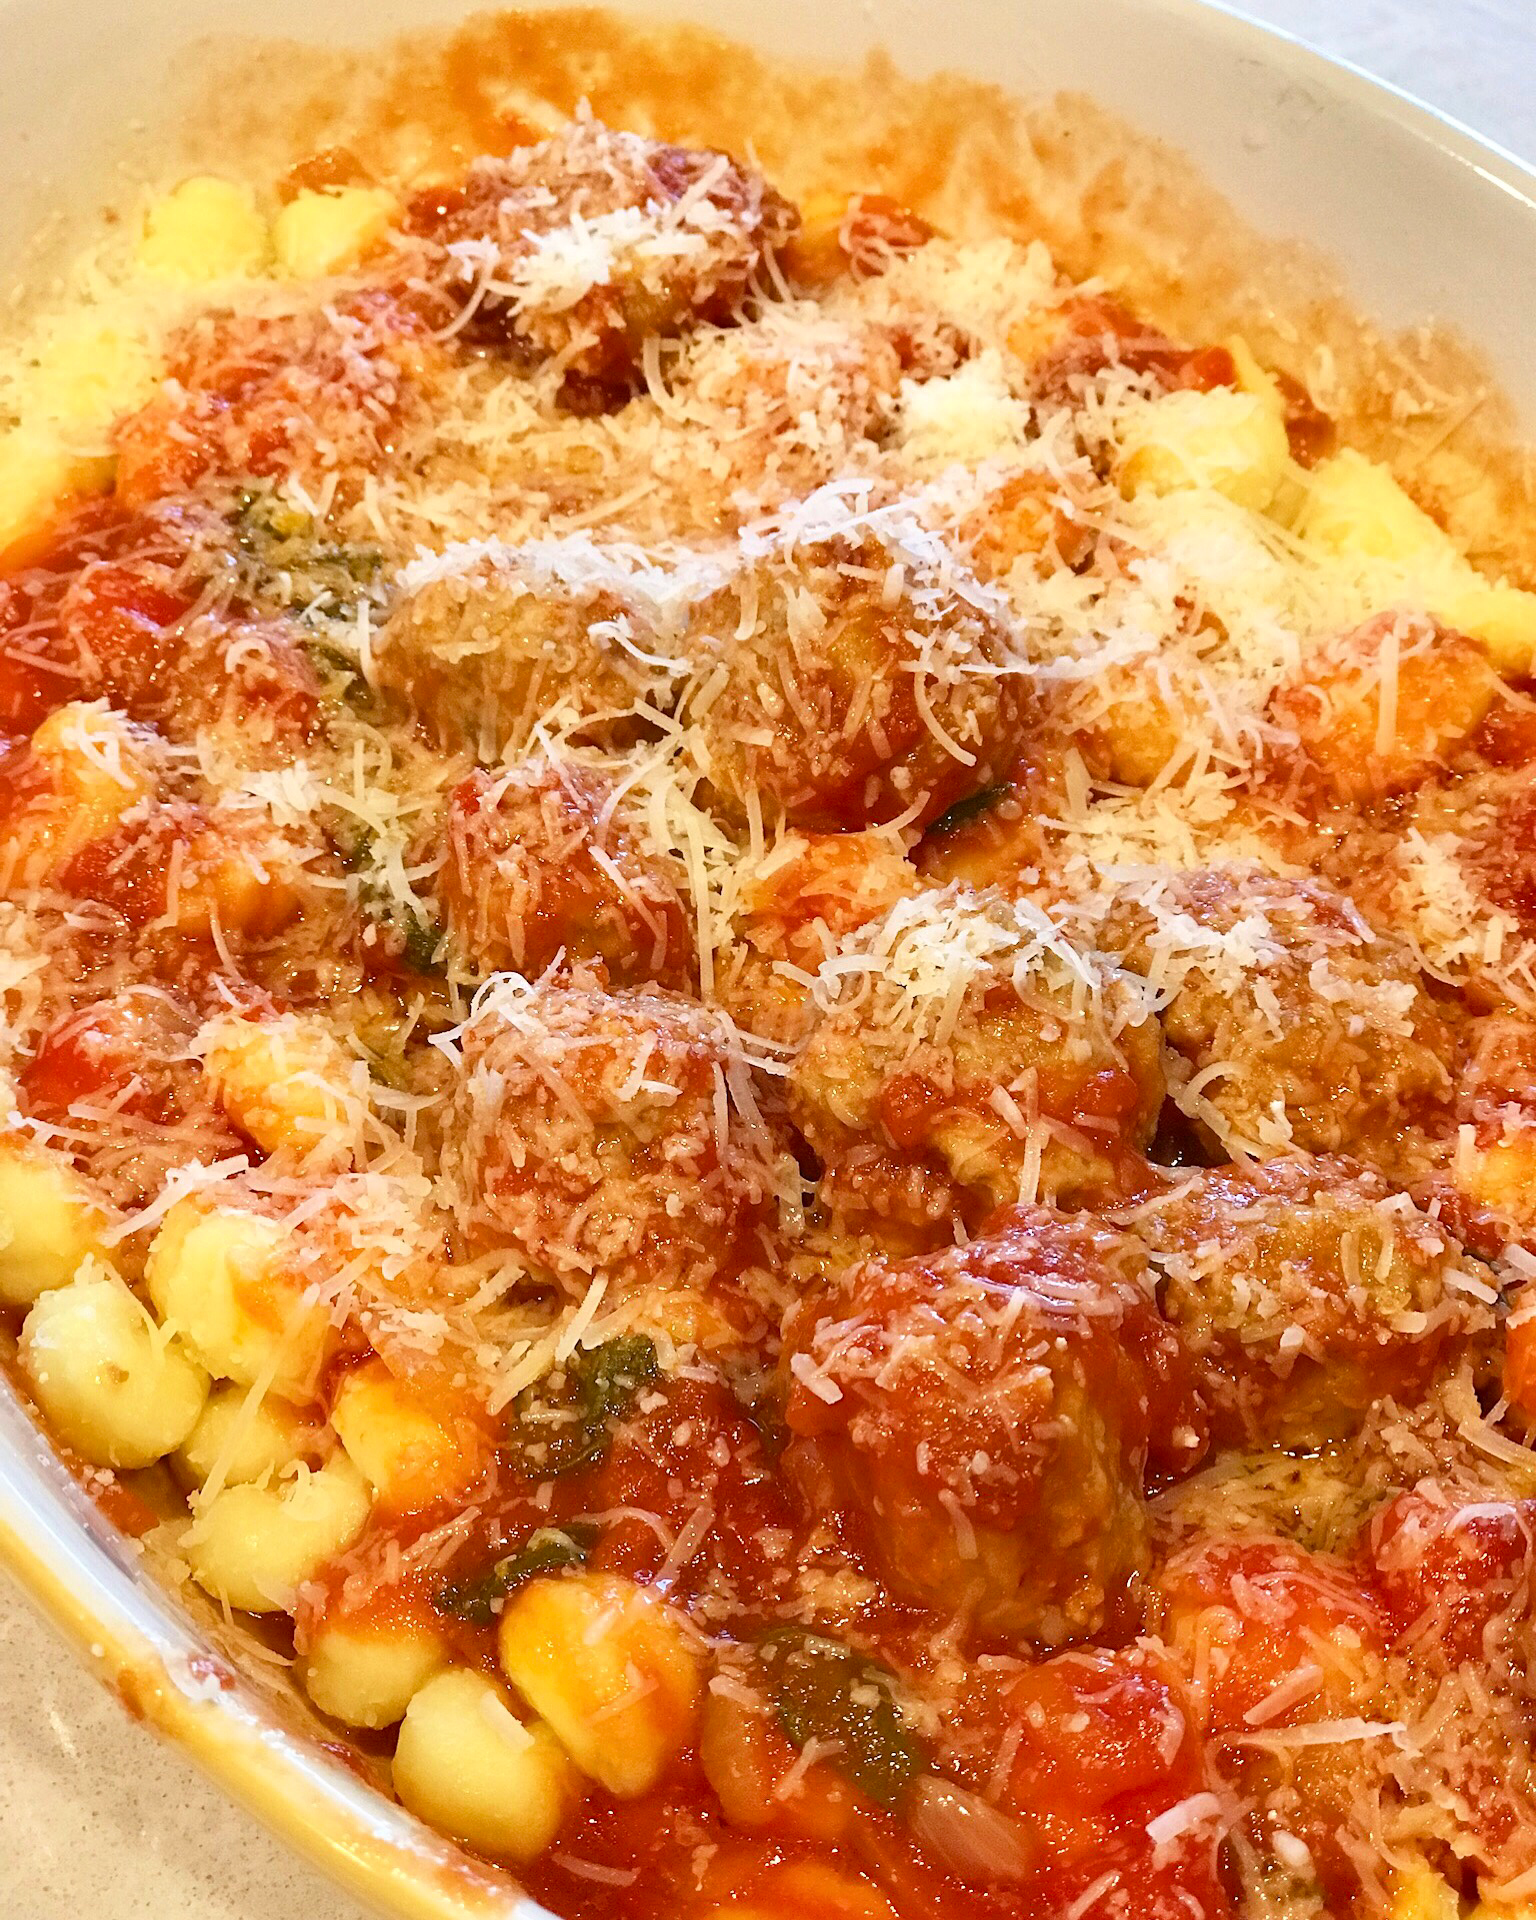 Polpette Con Sugo (Italian meatballs in tomato sauce) di Nonna Laura